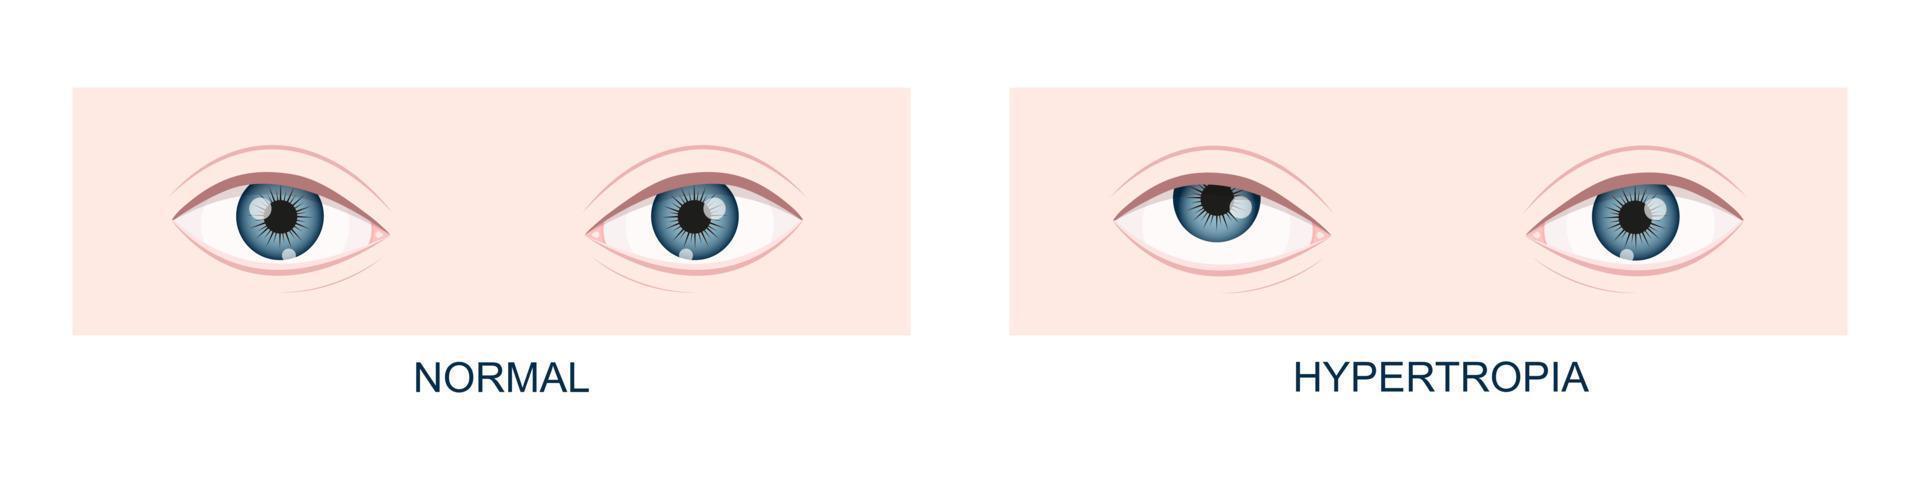 hipertropia. estrabismo vertical antes e depois da cirurgia. olhos humanos saudáveis e com olhar para cima. visão dupla vetor